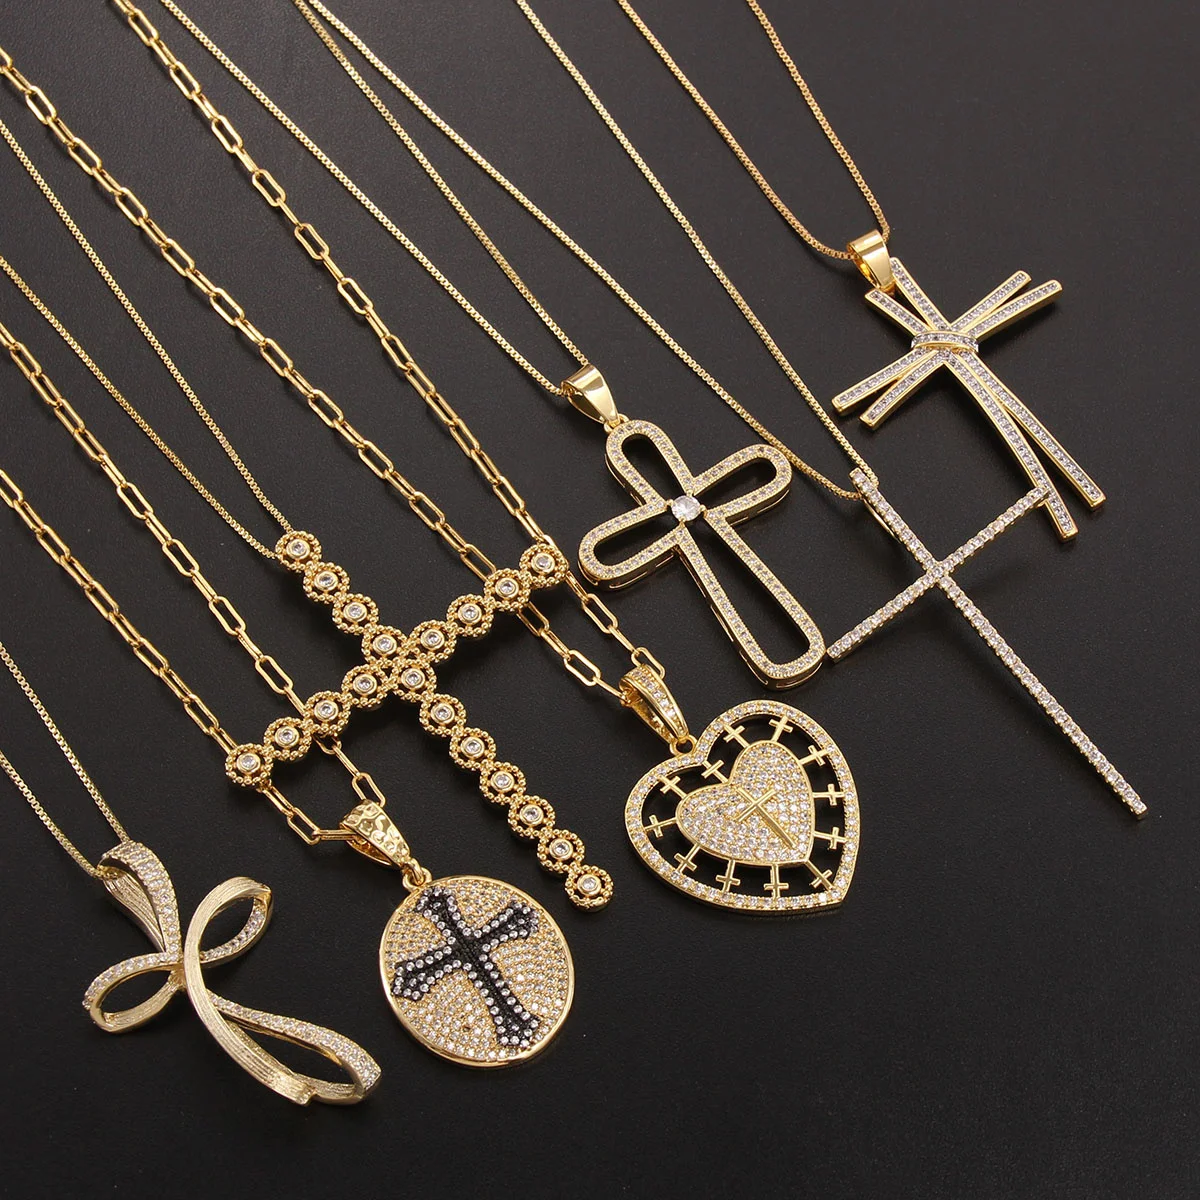 

SUNSLL модное циркониевое ожерелье с подвеской в виде креста, ожерелья-цепочки в стиле панк, модный чокер, ювелирные изделия для мужчин и женщин, оптовая продажа